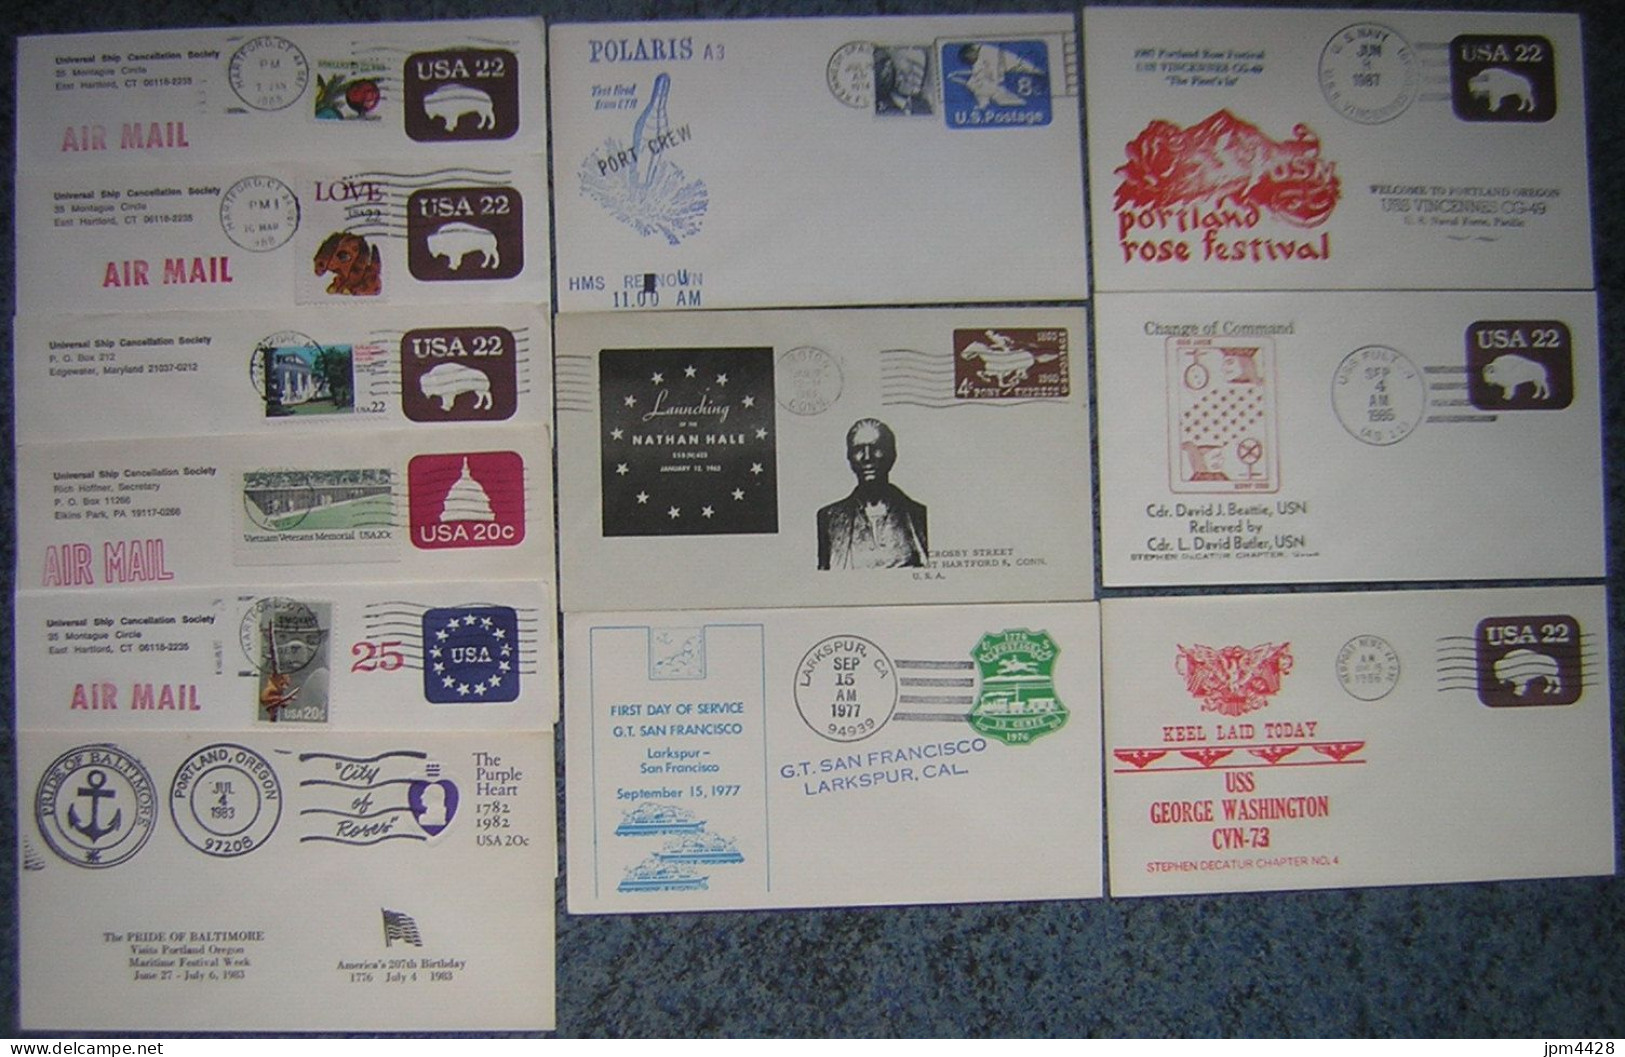 USA Etats Unis Lot De 9 Enveloppes  Sujet Divers U.S.S. -  Entre 1936 Et 1959  - Oblitérés - Event Covers